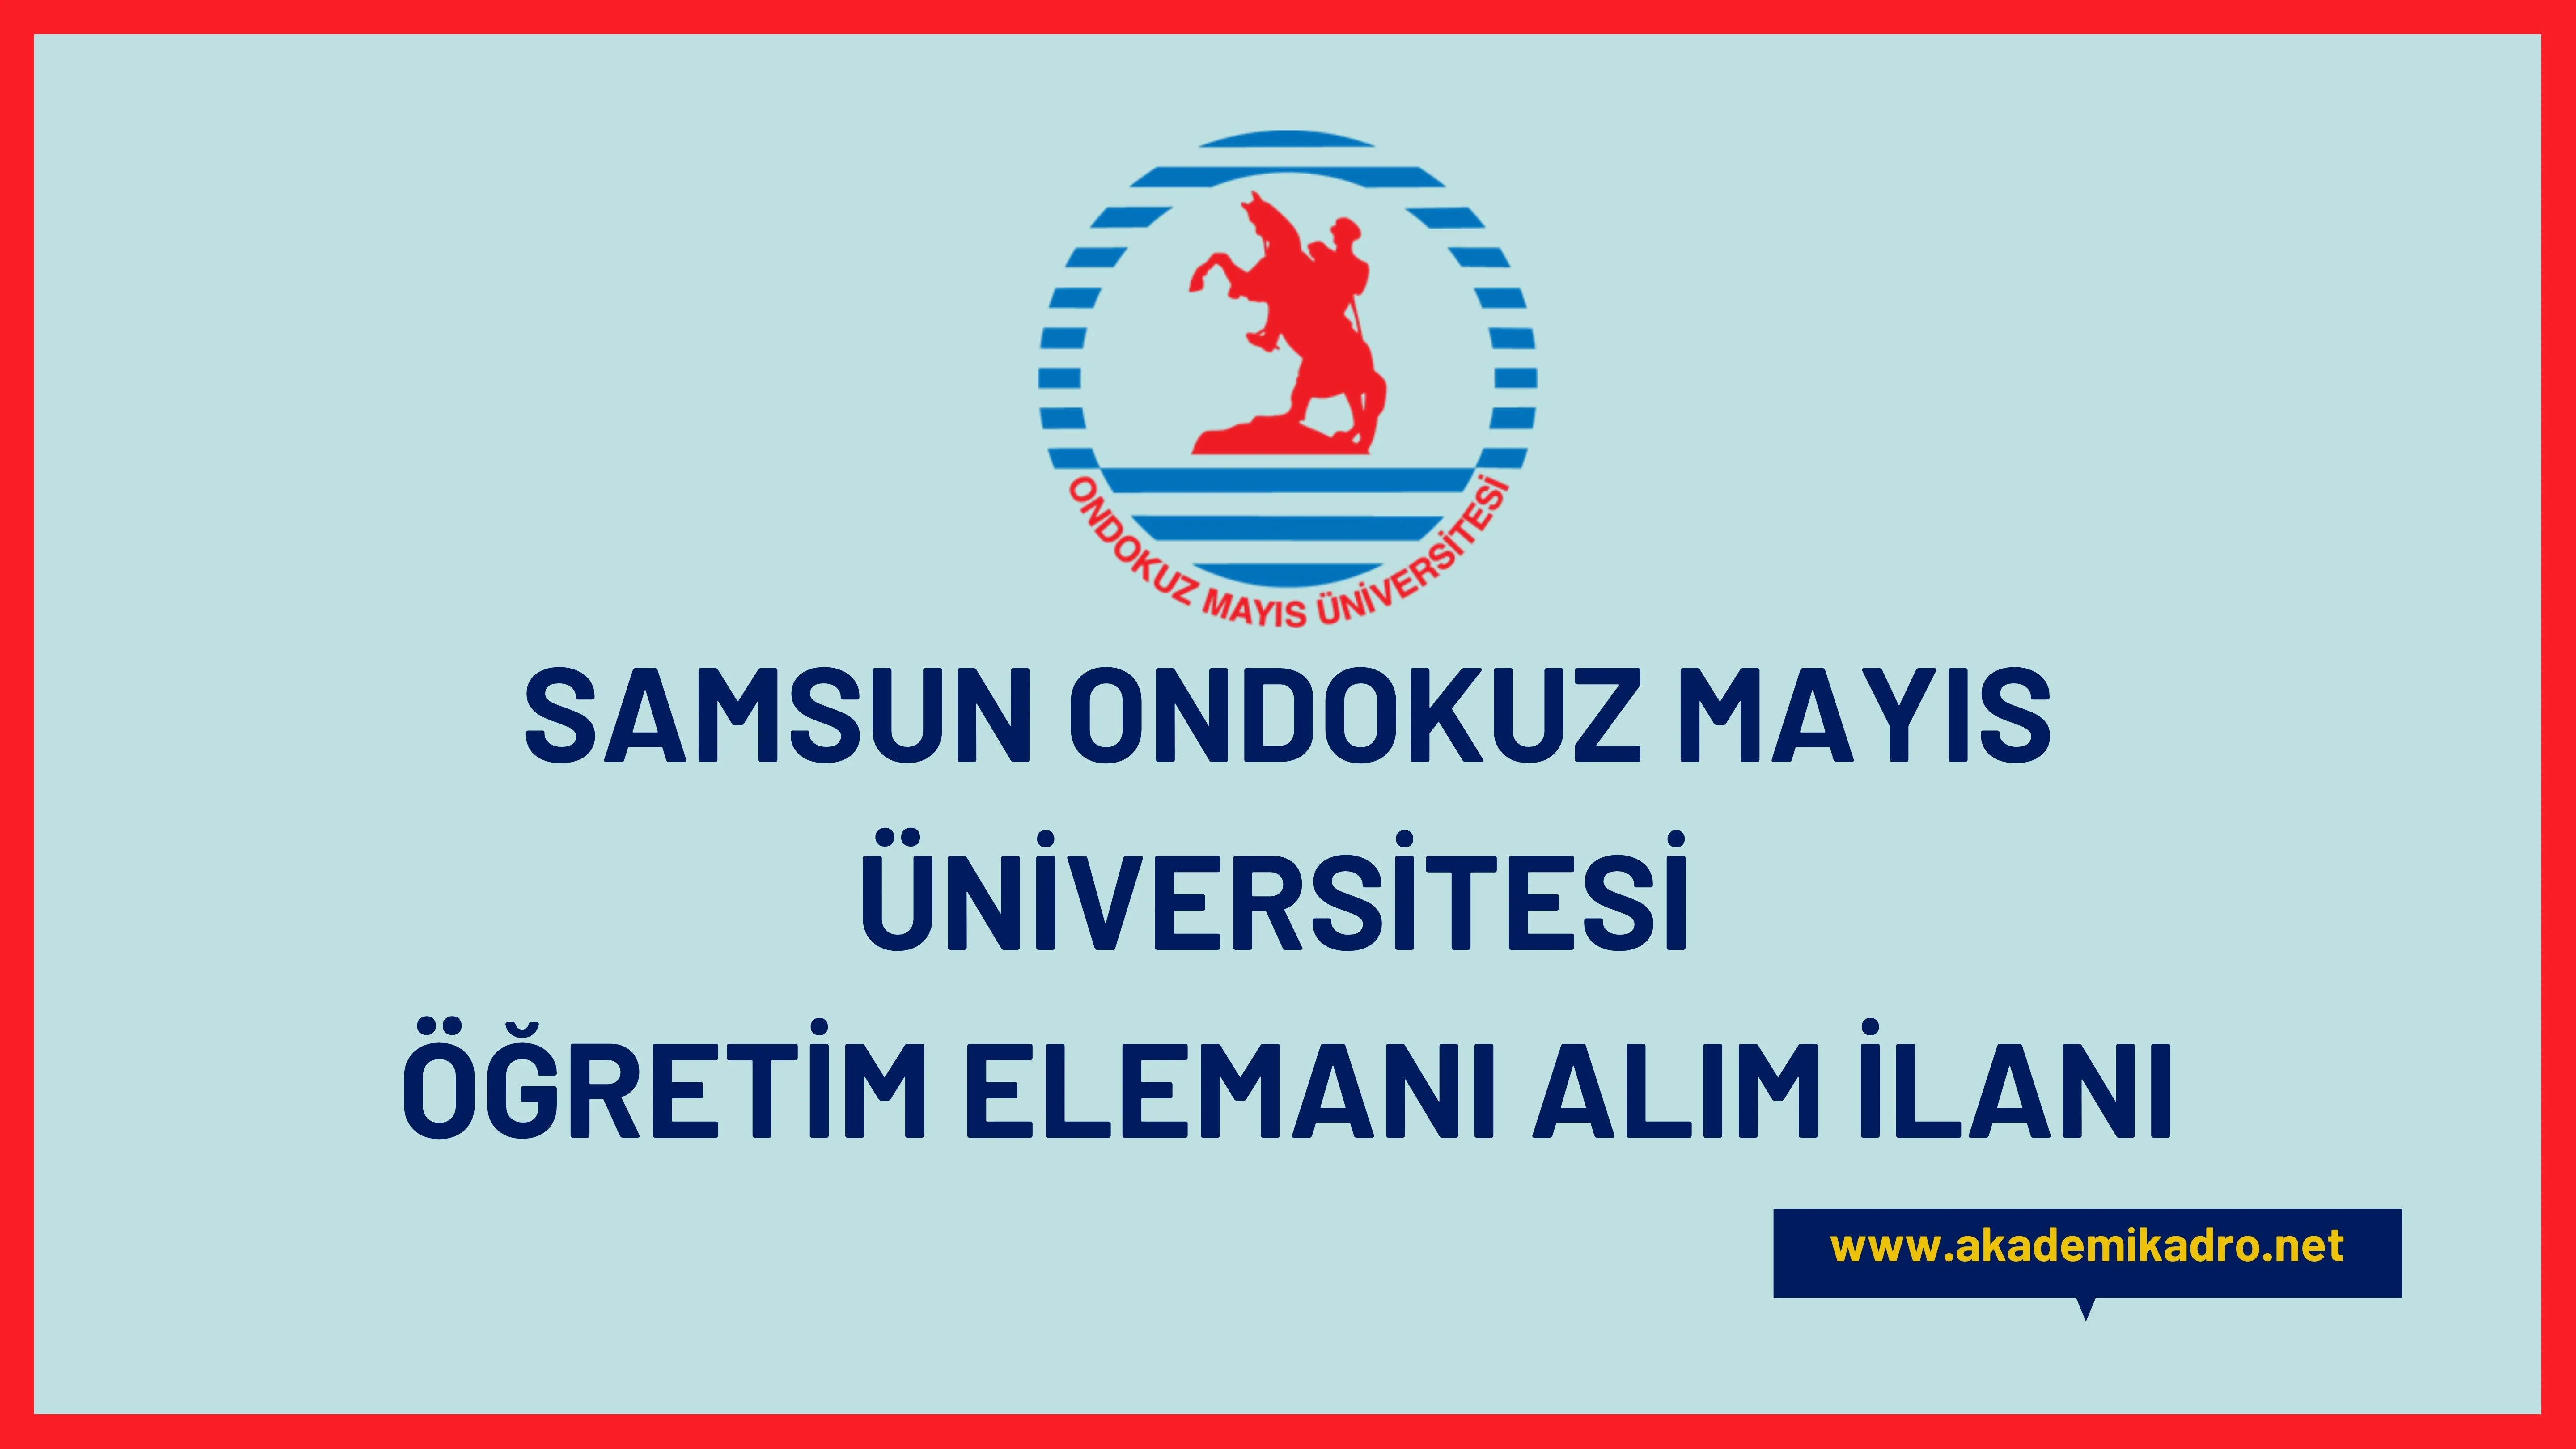 Ondokuz Mayıs Üniversitesi 25 Öğretim görevlisi, 22 Araştırma görevlisi alacaktır.